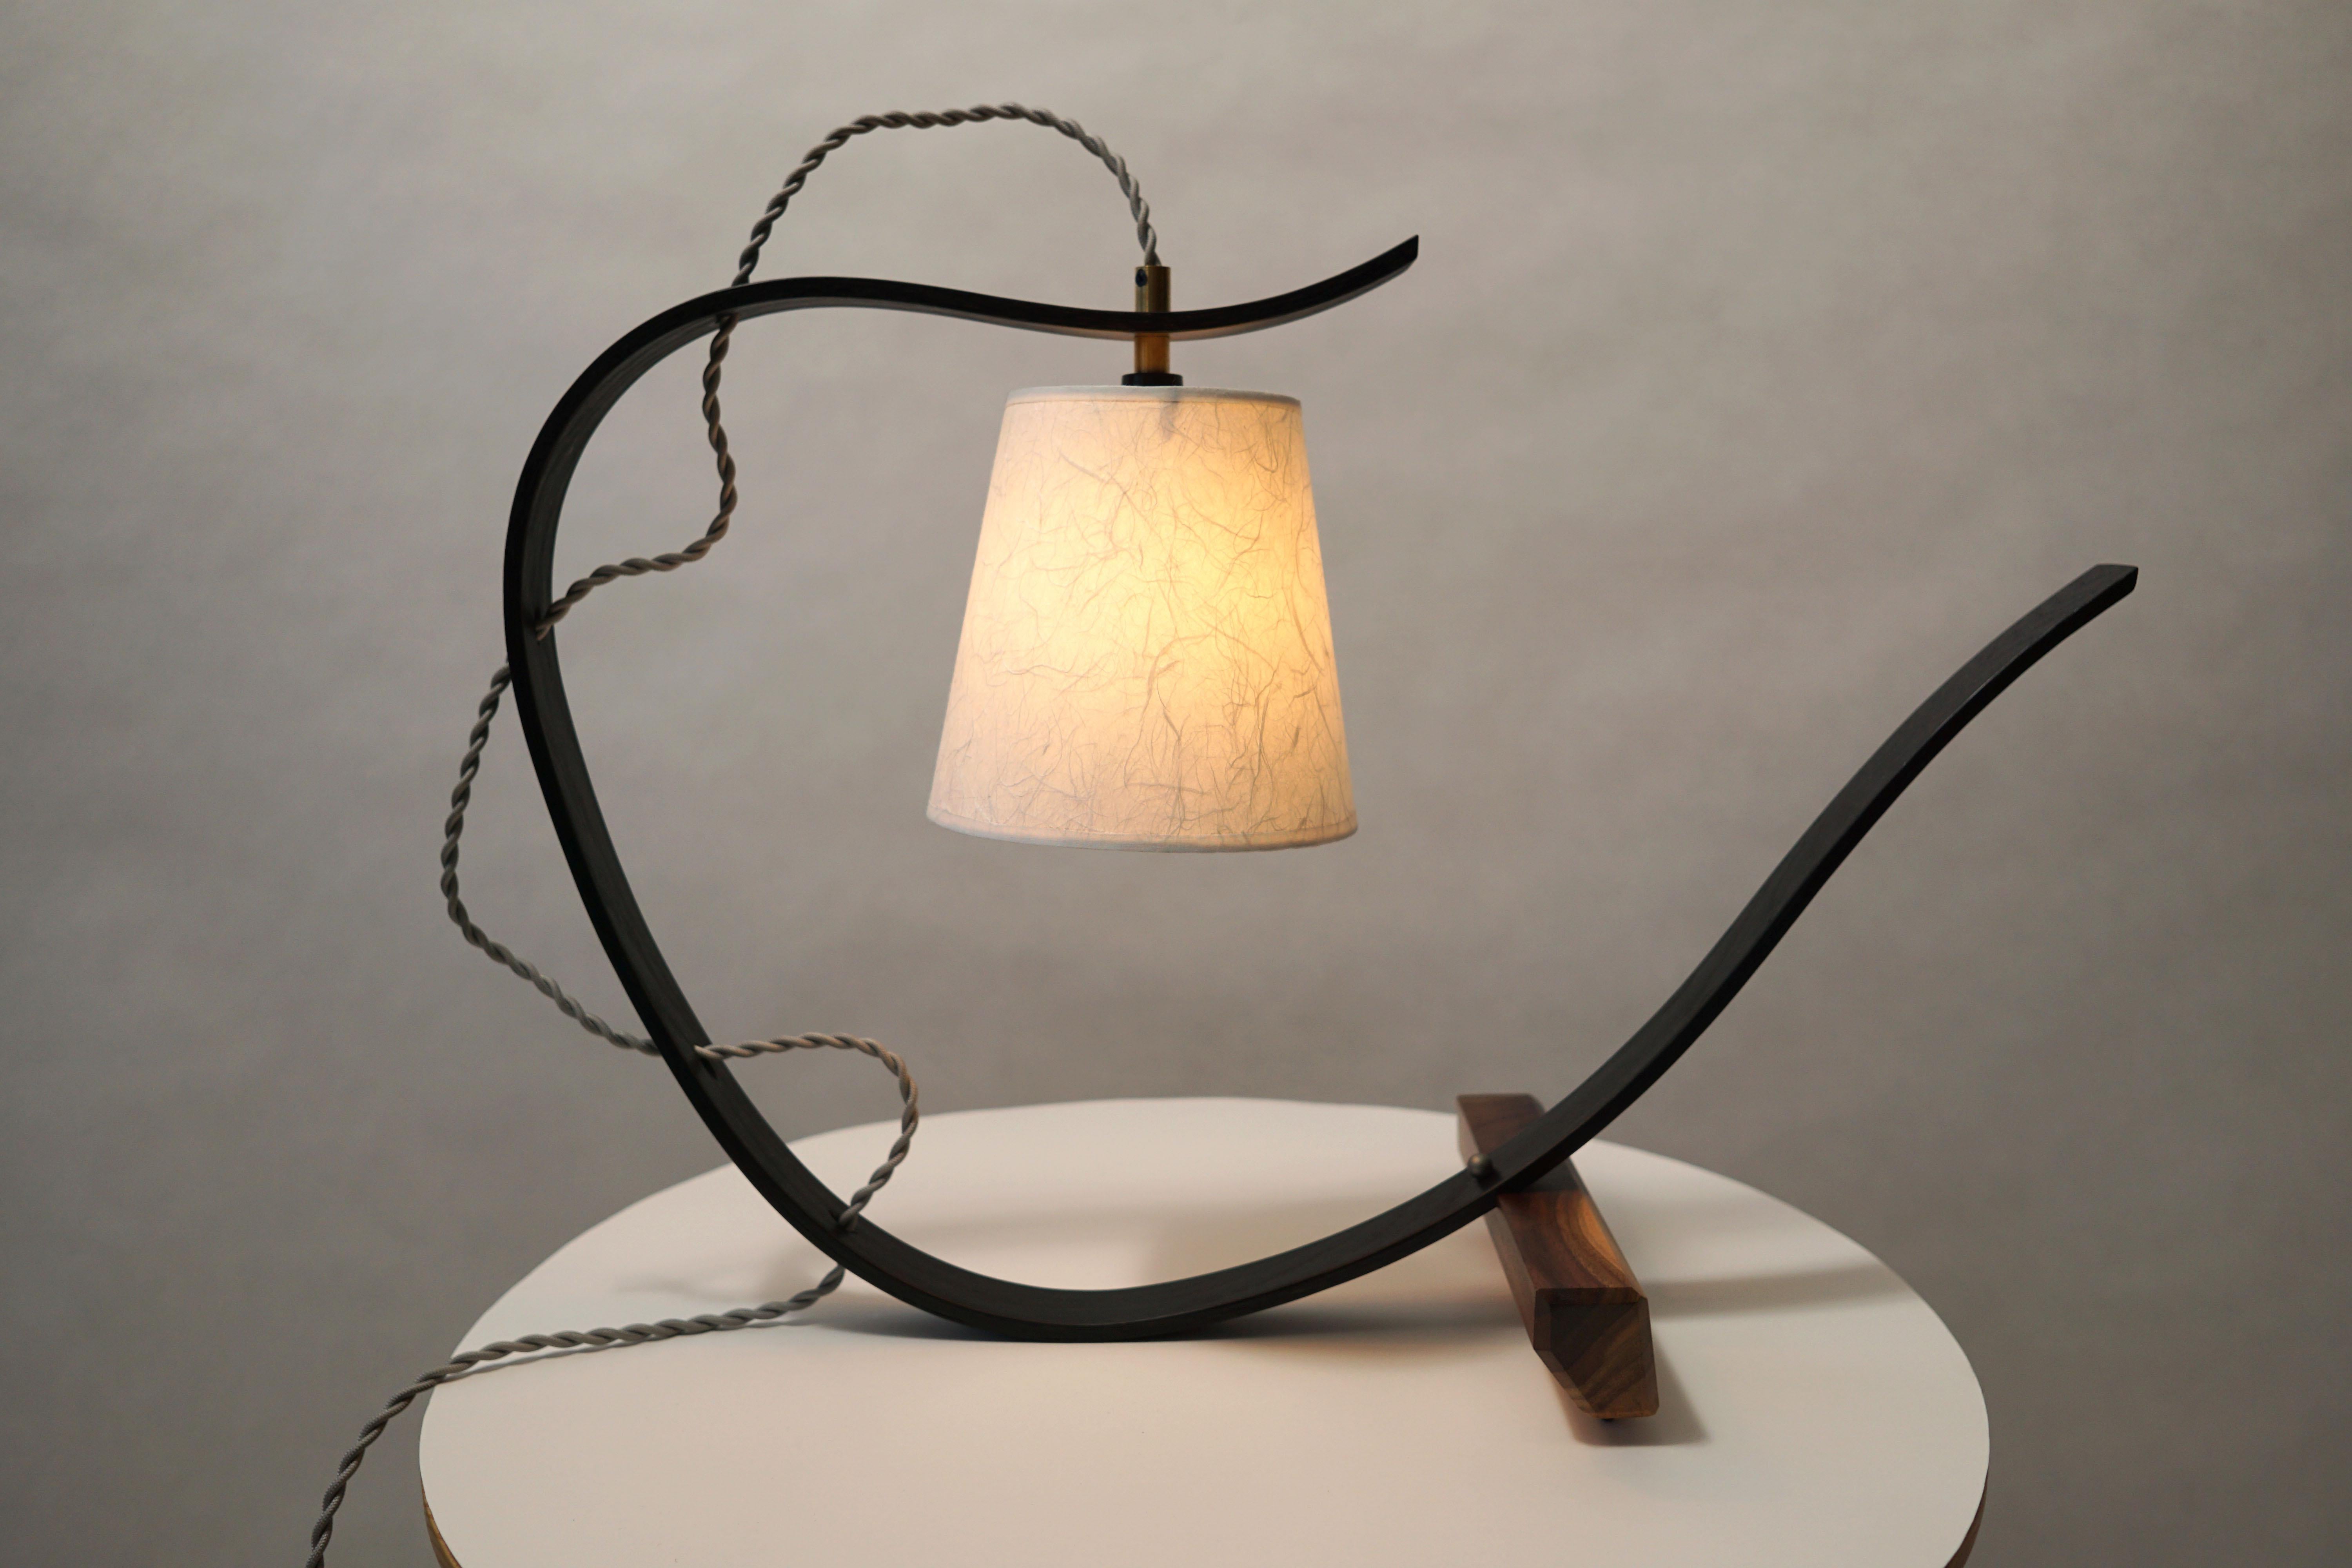 Une lampe de table qui est aussi une sculpture attirera l'attention sur un coin de votre salon. Il apportera une nouvelle vie à votre salle à manger tout en créant une ambiance chaleureuse. Le bois de frêne clair présente un grain intéressant et